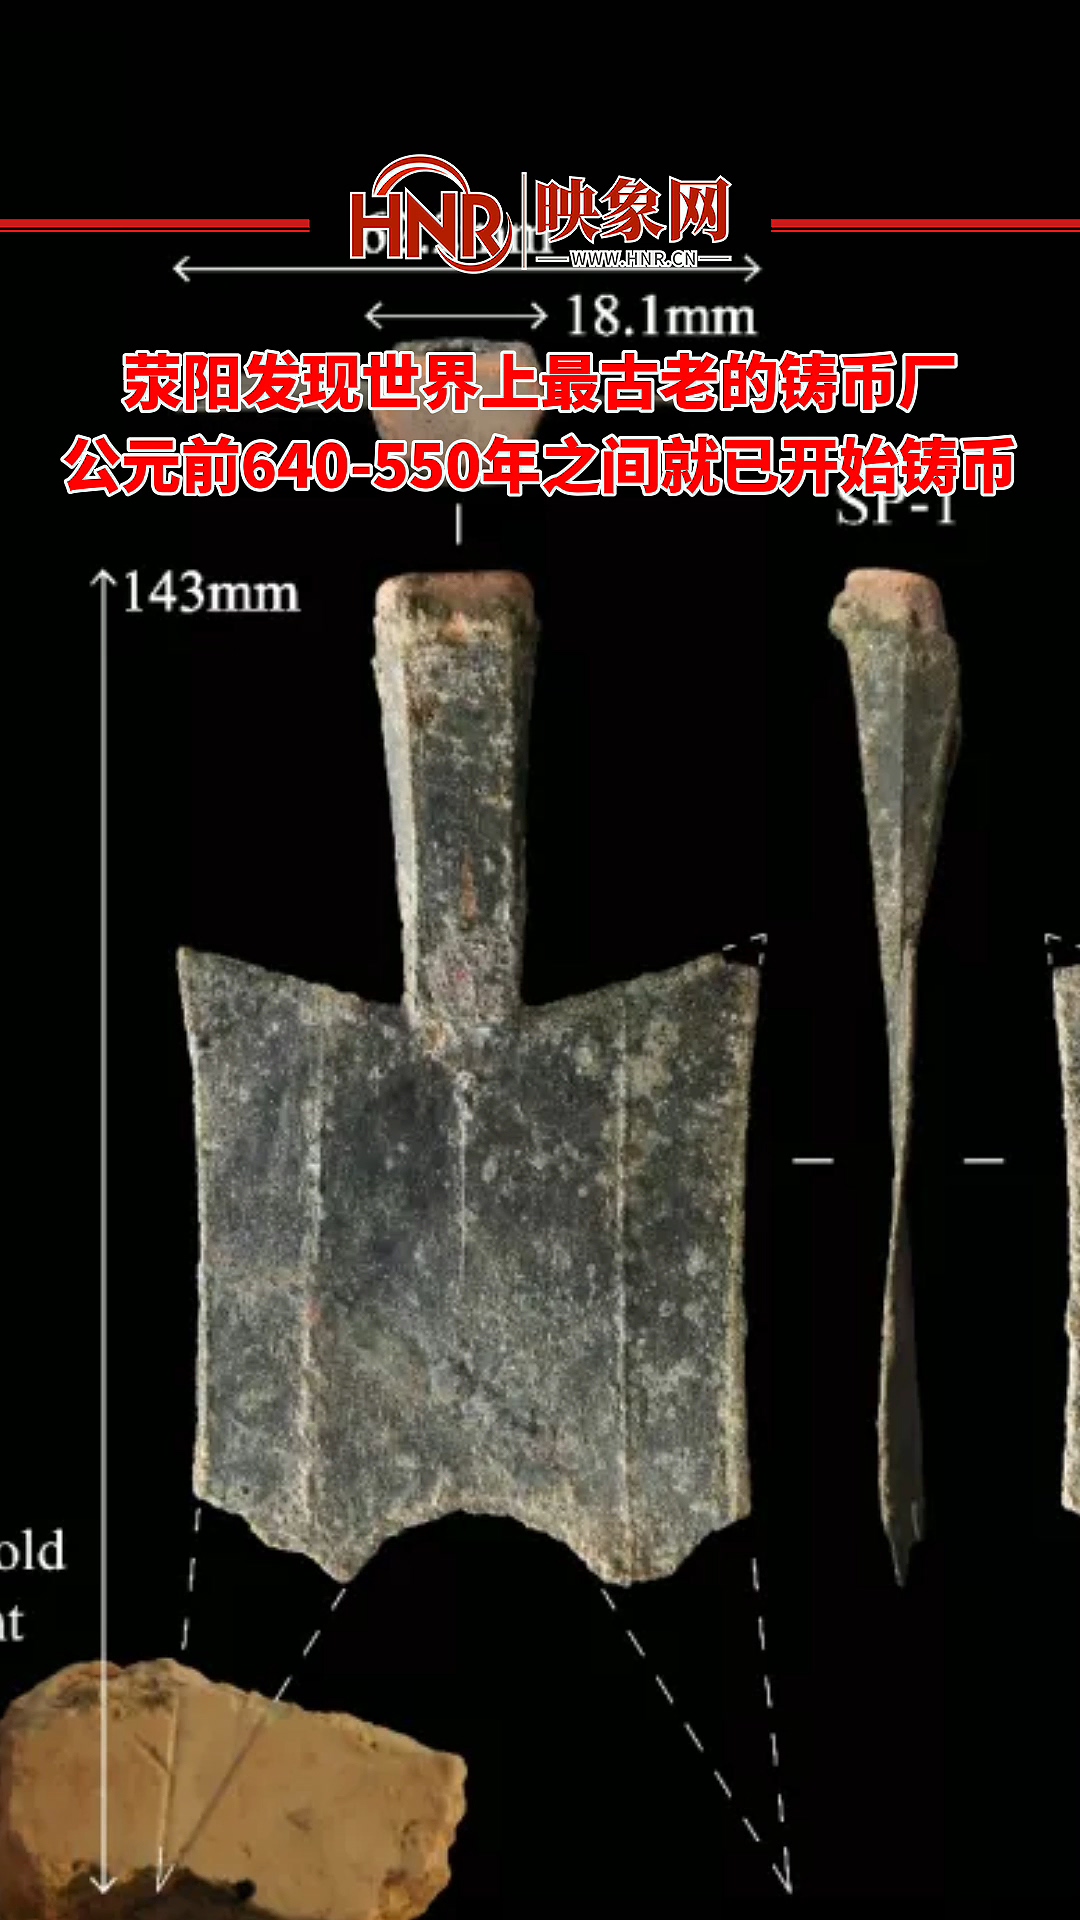 荥阳发现世界上最古老的铸币厂 公元前640-550年之间就已开始铸币